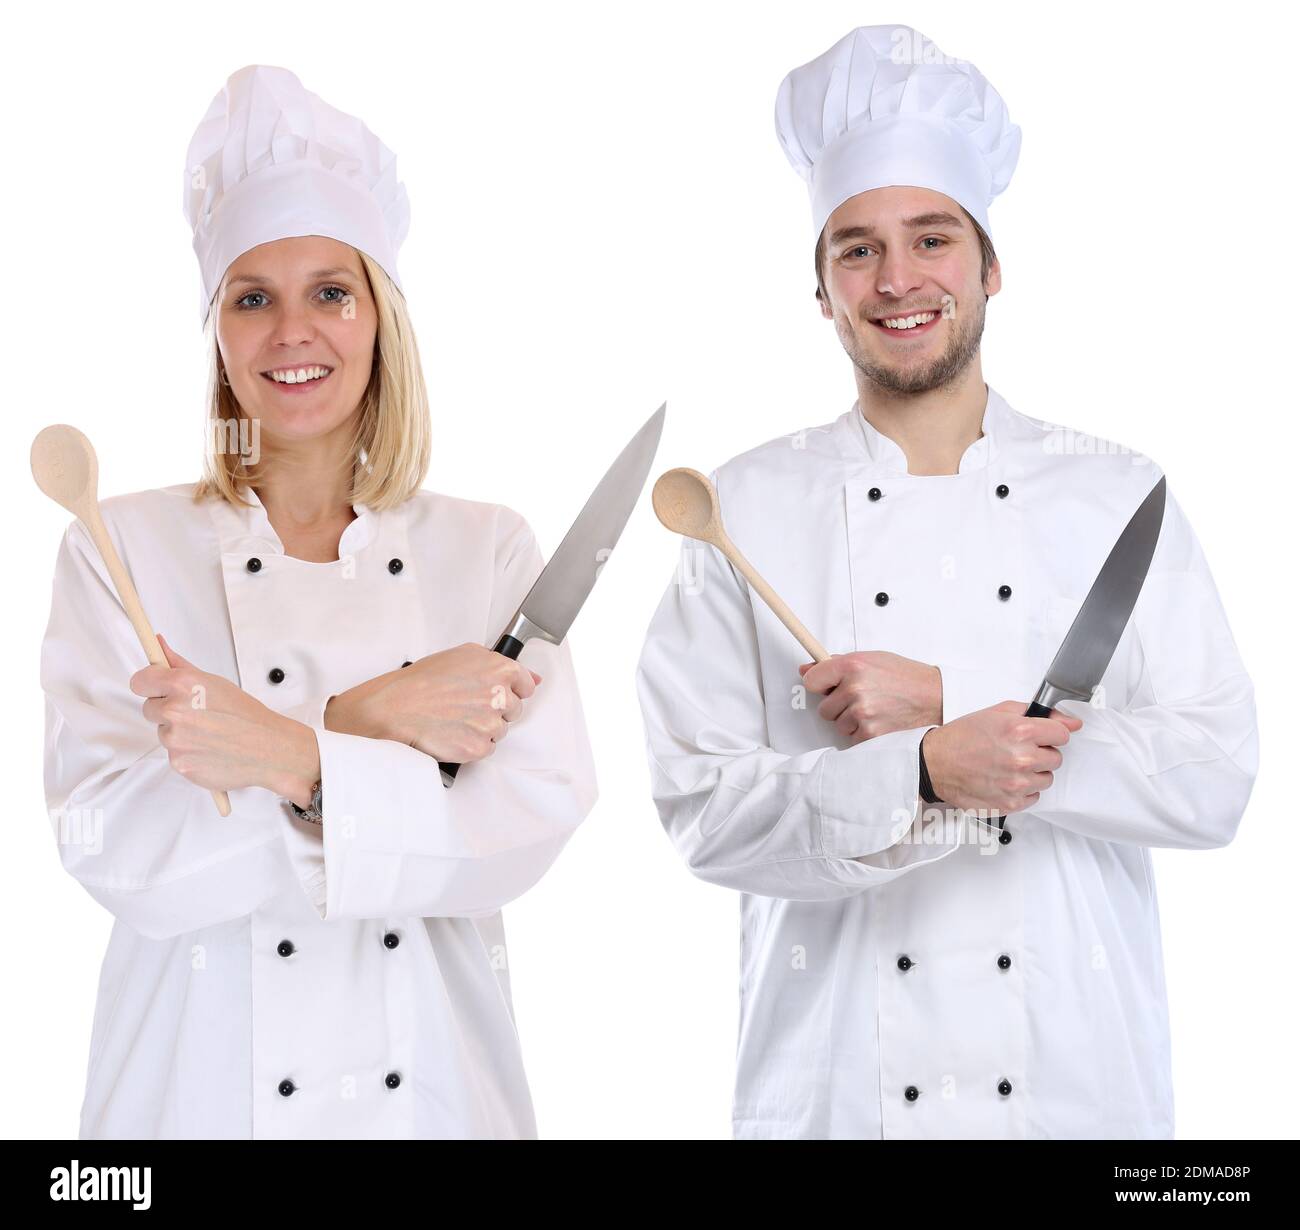 Koch Köche jung Azubi Azubis Ausbildung Auszubildender kochen Beruf Freisteller freigestellt vor einem weissen Hintergrund Foto Stock